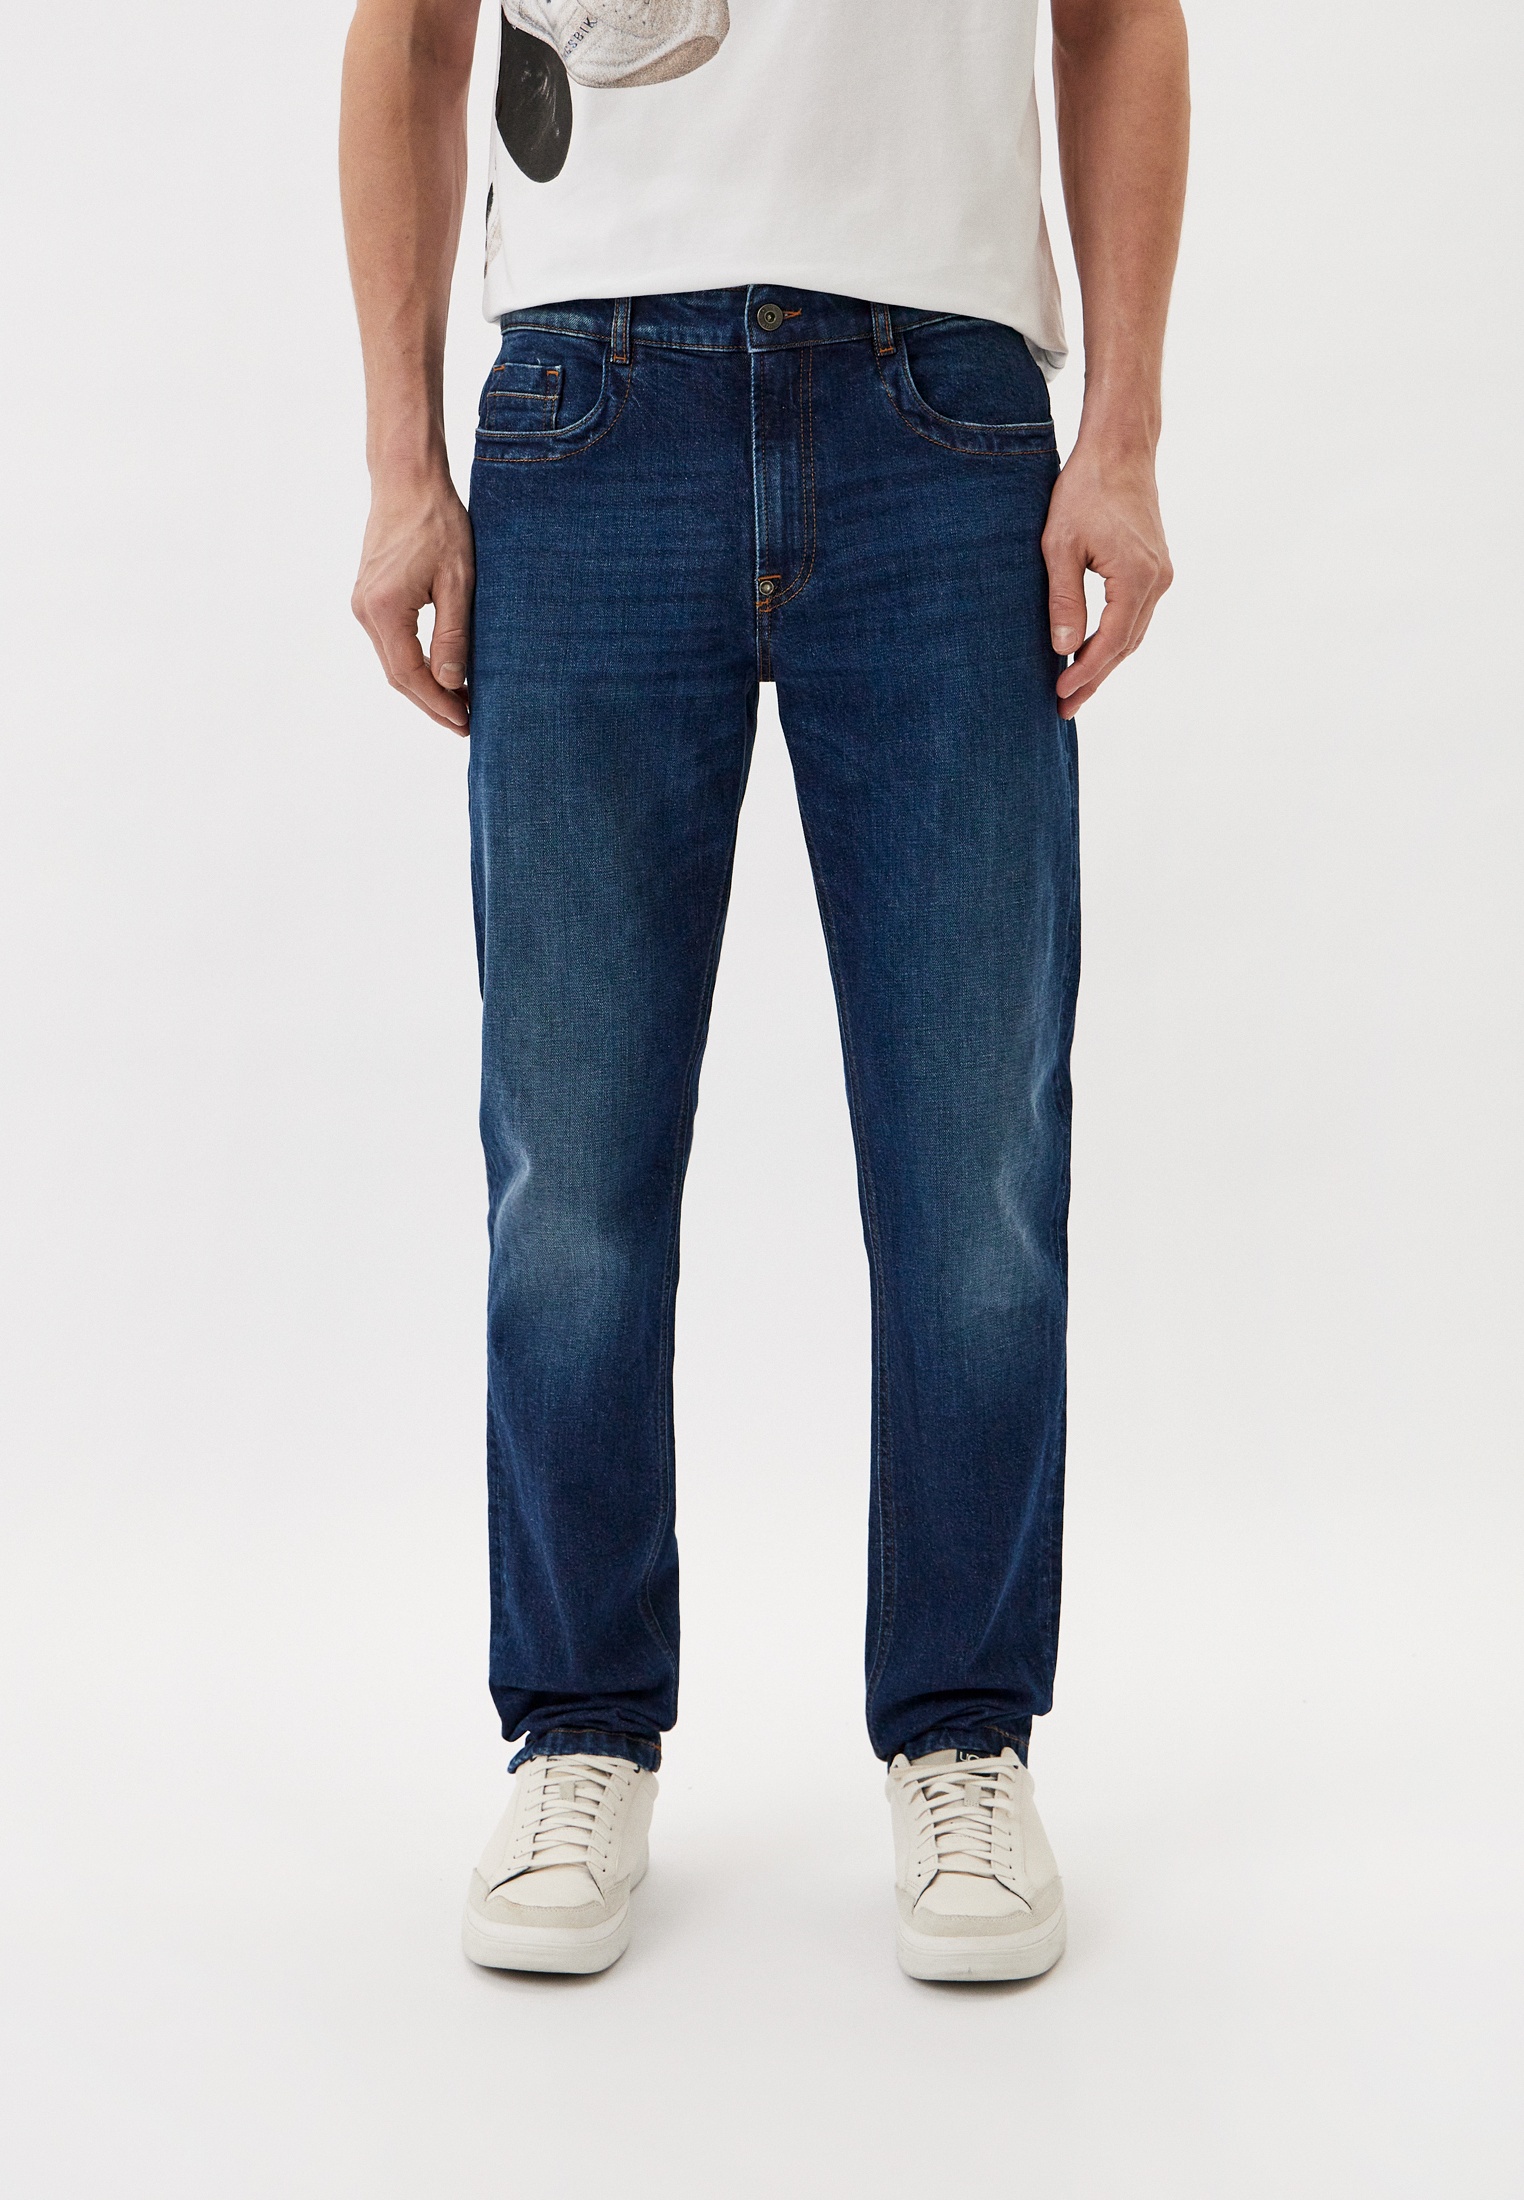 Мужские прямые джинсы Bikkembergs (Биккембергс) CQ10222S3976: изображение 1